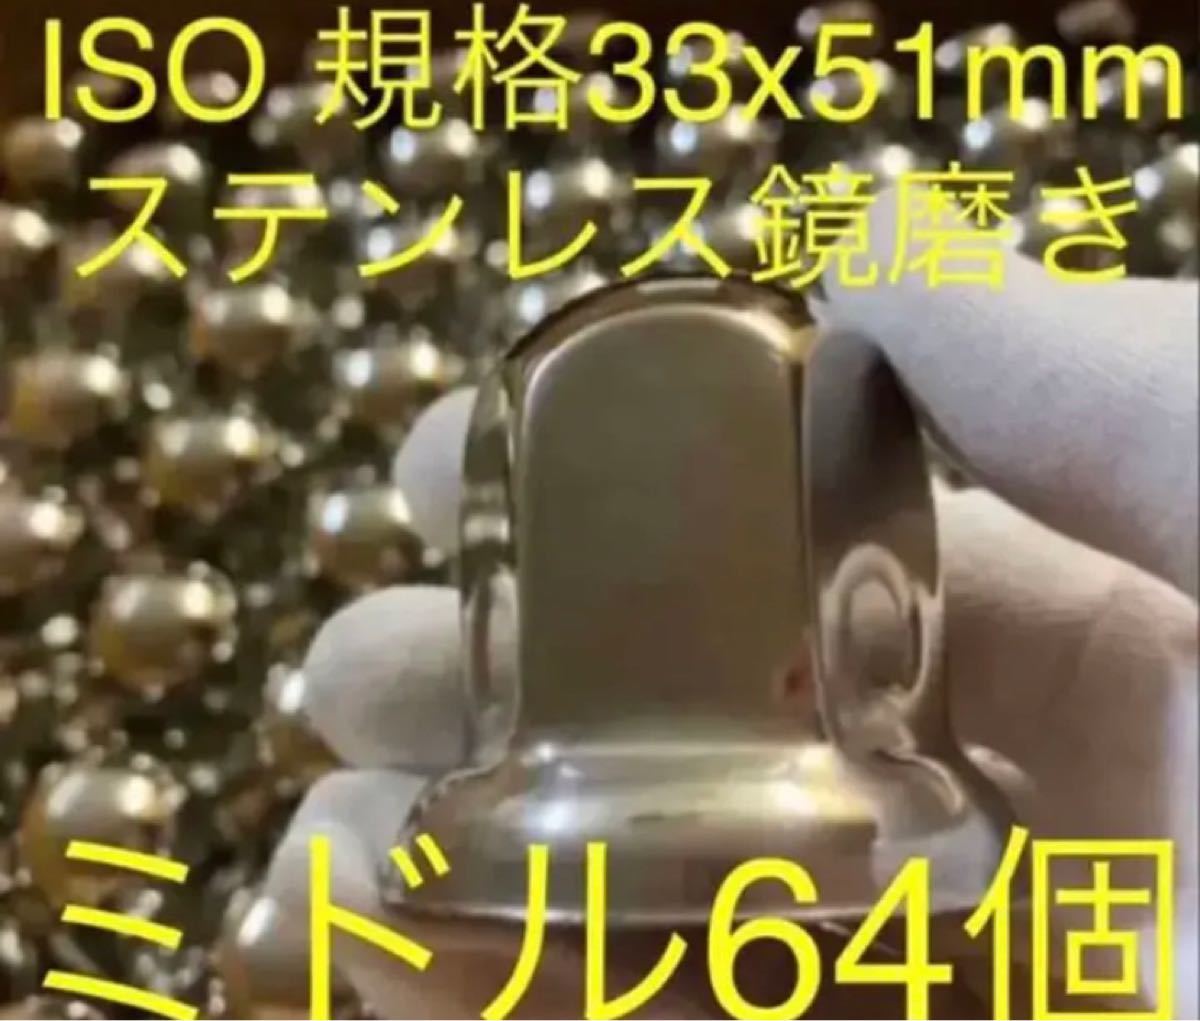 ナットキャップ ステンレス鏡磨き ISO規格33mm用各種 予備付き 64個